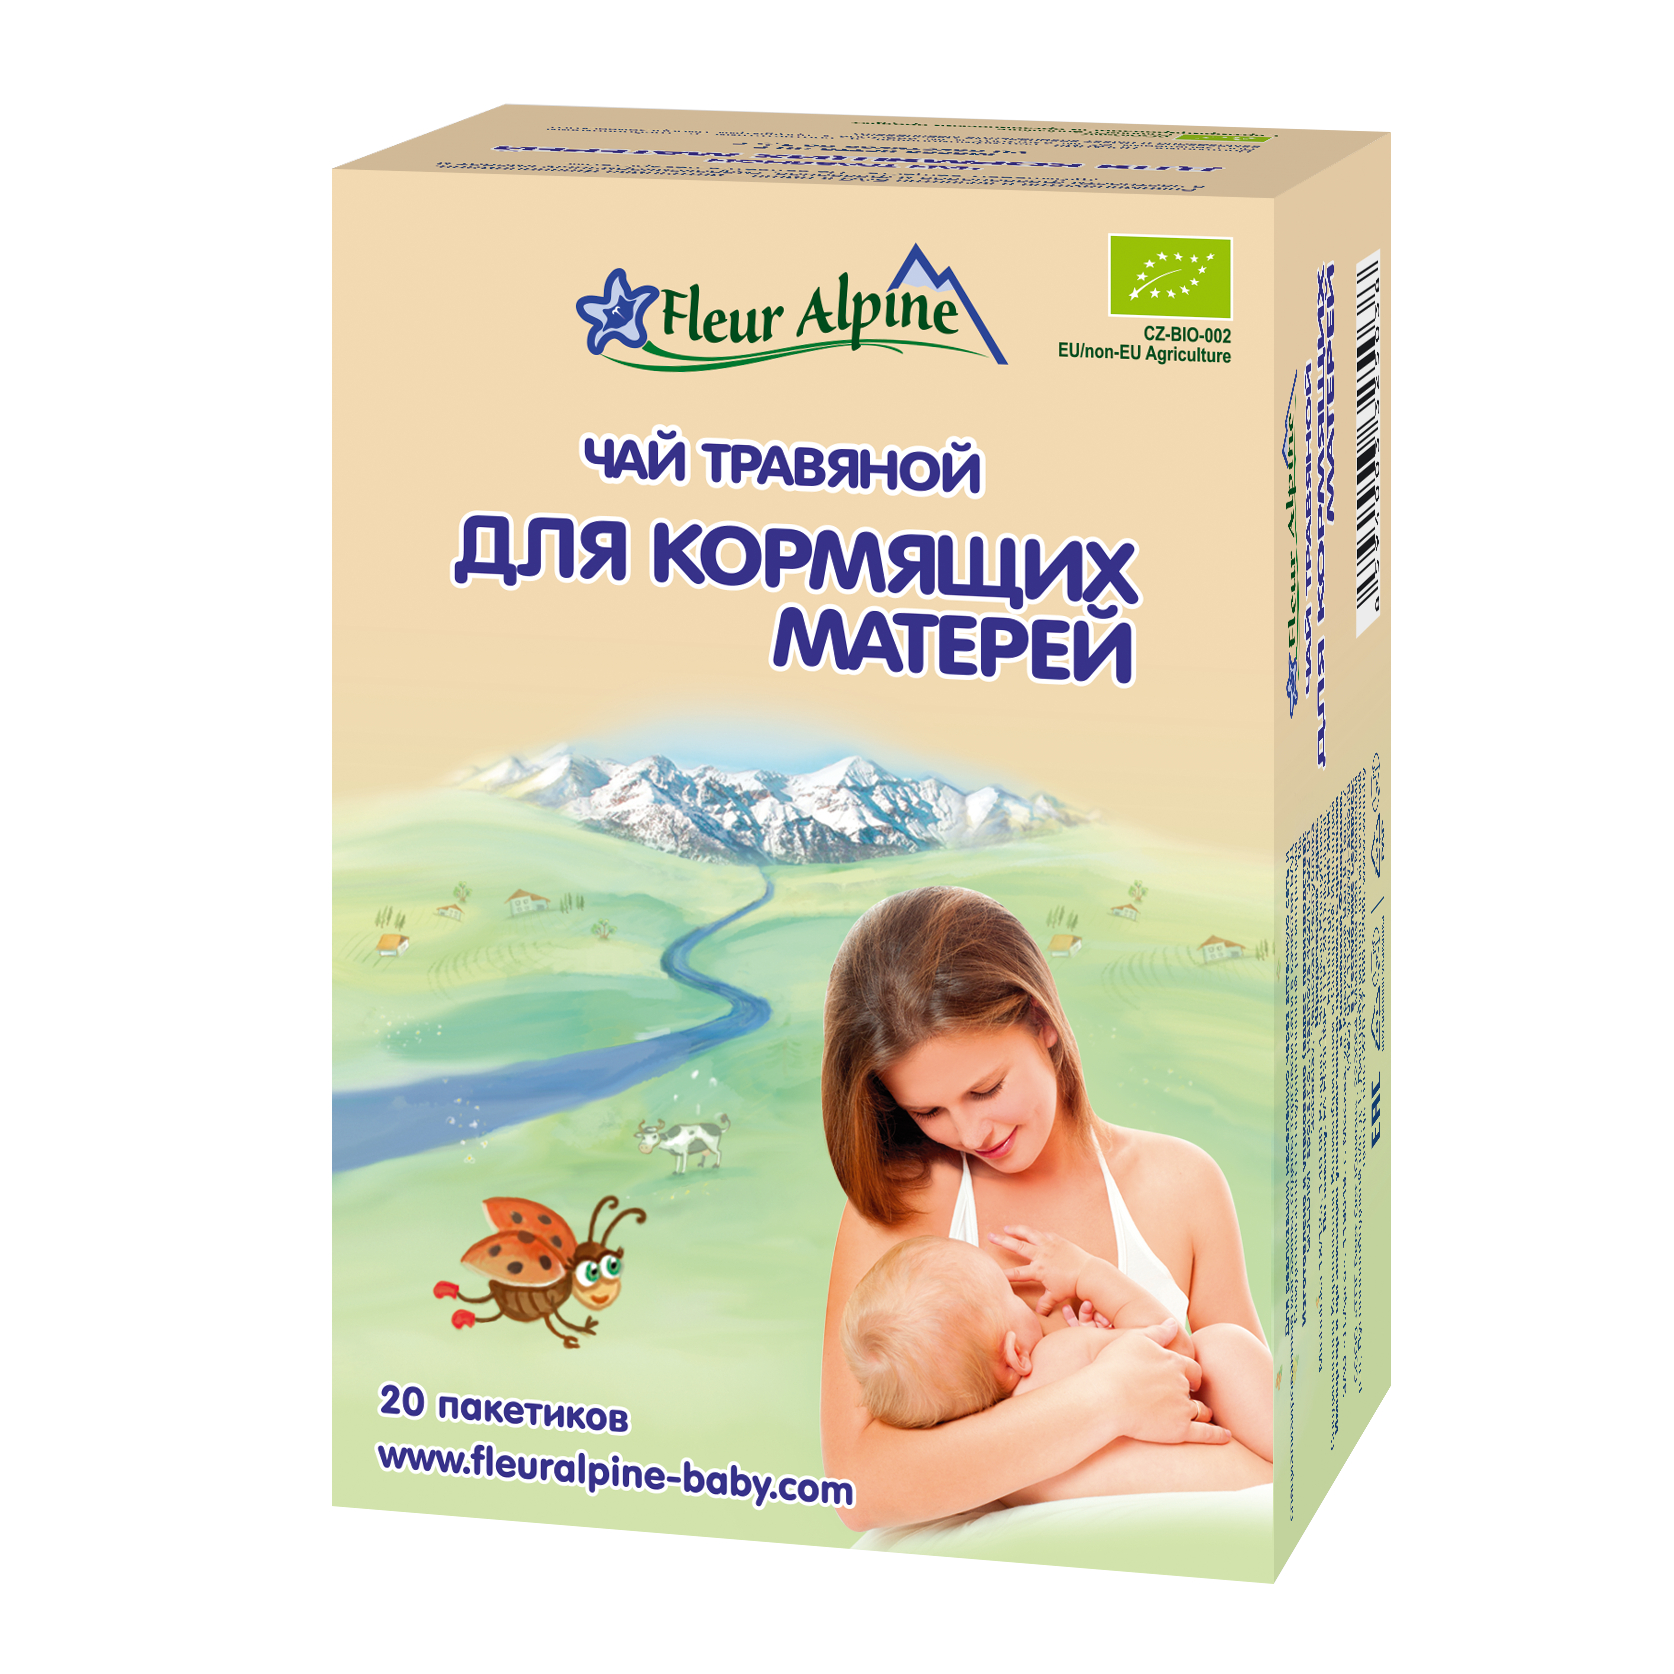 Чай травяной Органик для кормящих матерей - 20 пакетиков по 1,5 г